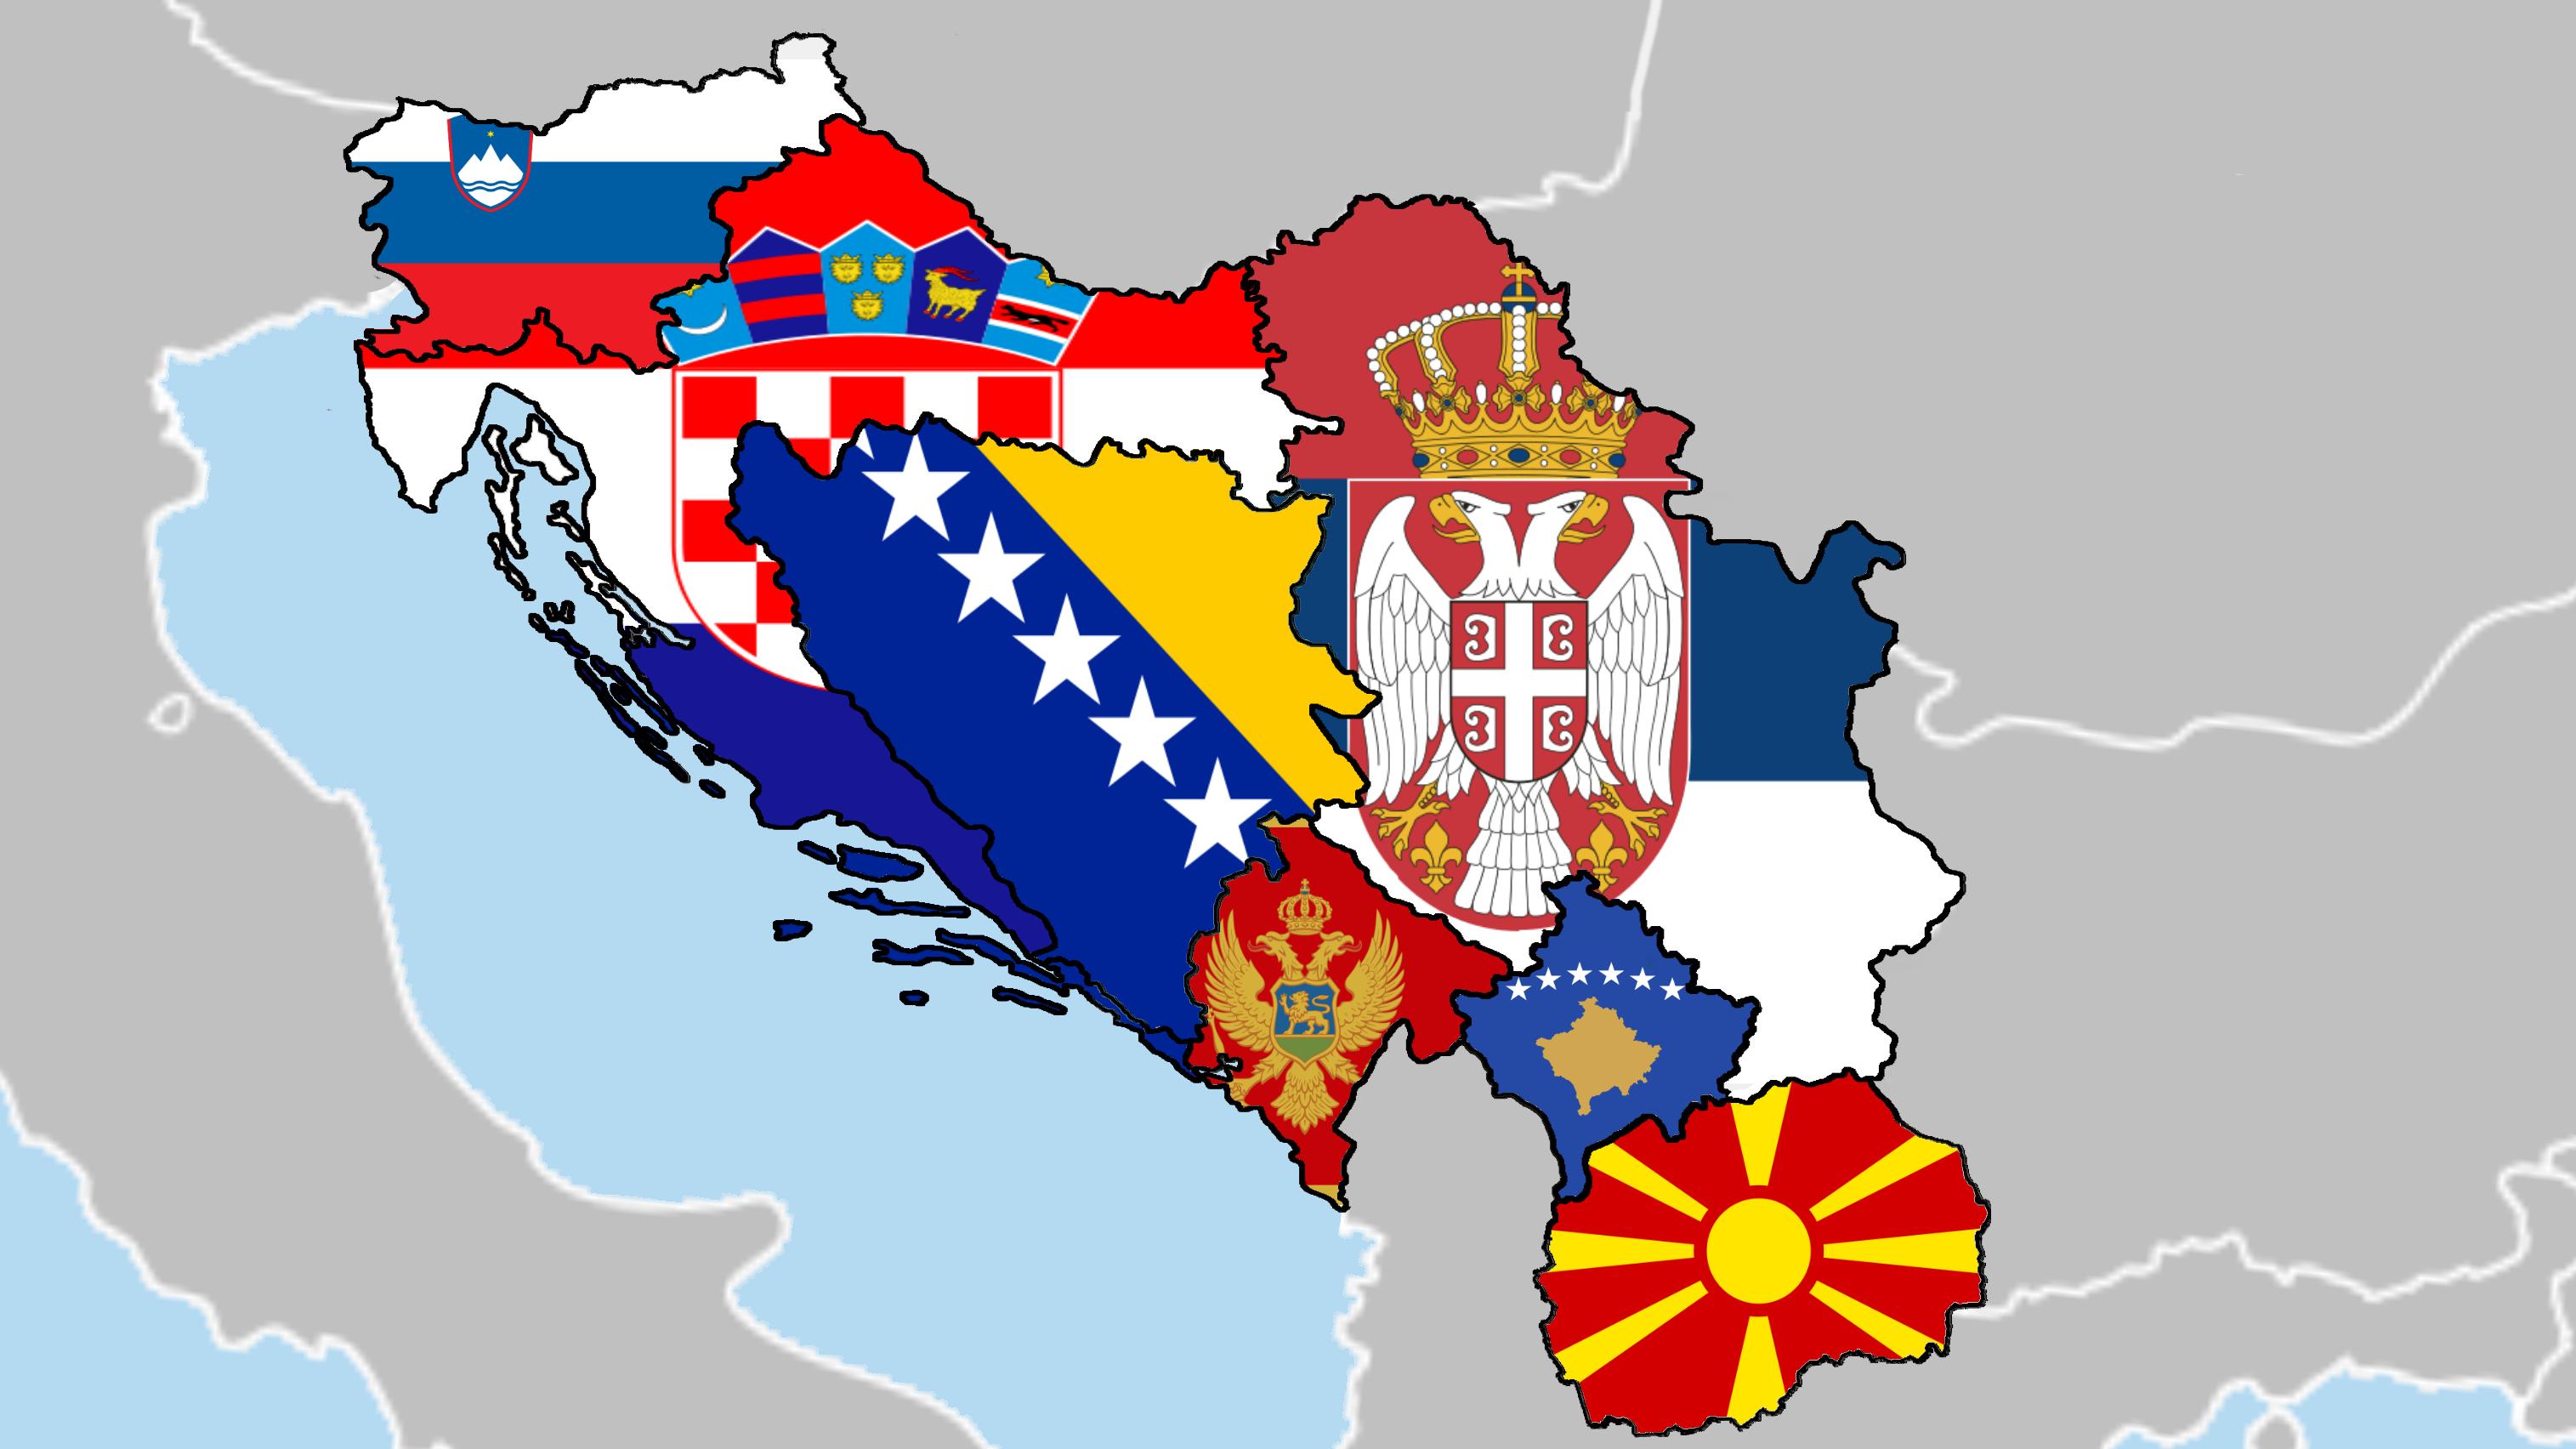 Югославия это сербия. Социалистическая Федеративная Республика Югославия. Сербия Хорватия Югославия. Федеративная народная Республика Югославия. Союзная Республика Югославия.